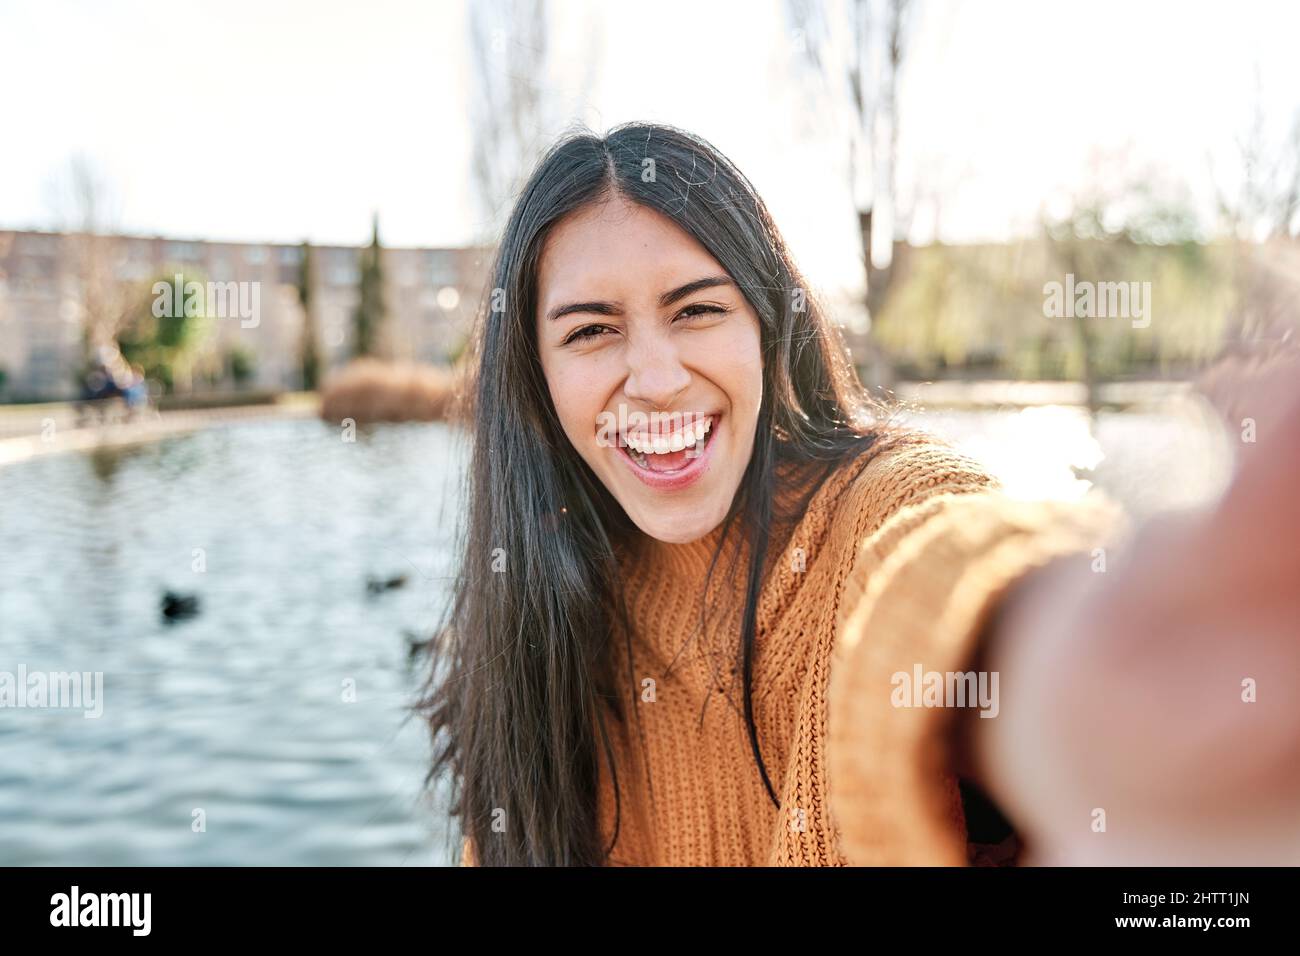 Porträt einer charmanten jungen Frau, die lächelt, während sie ein Selfie-Foto fotografiert. Stockfoto